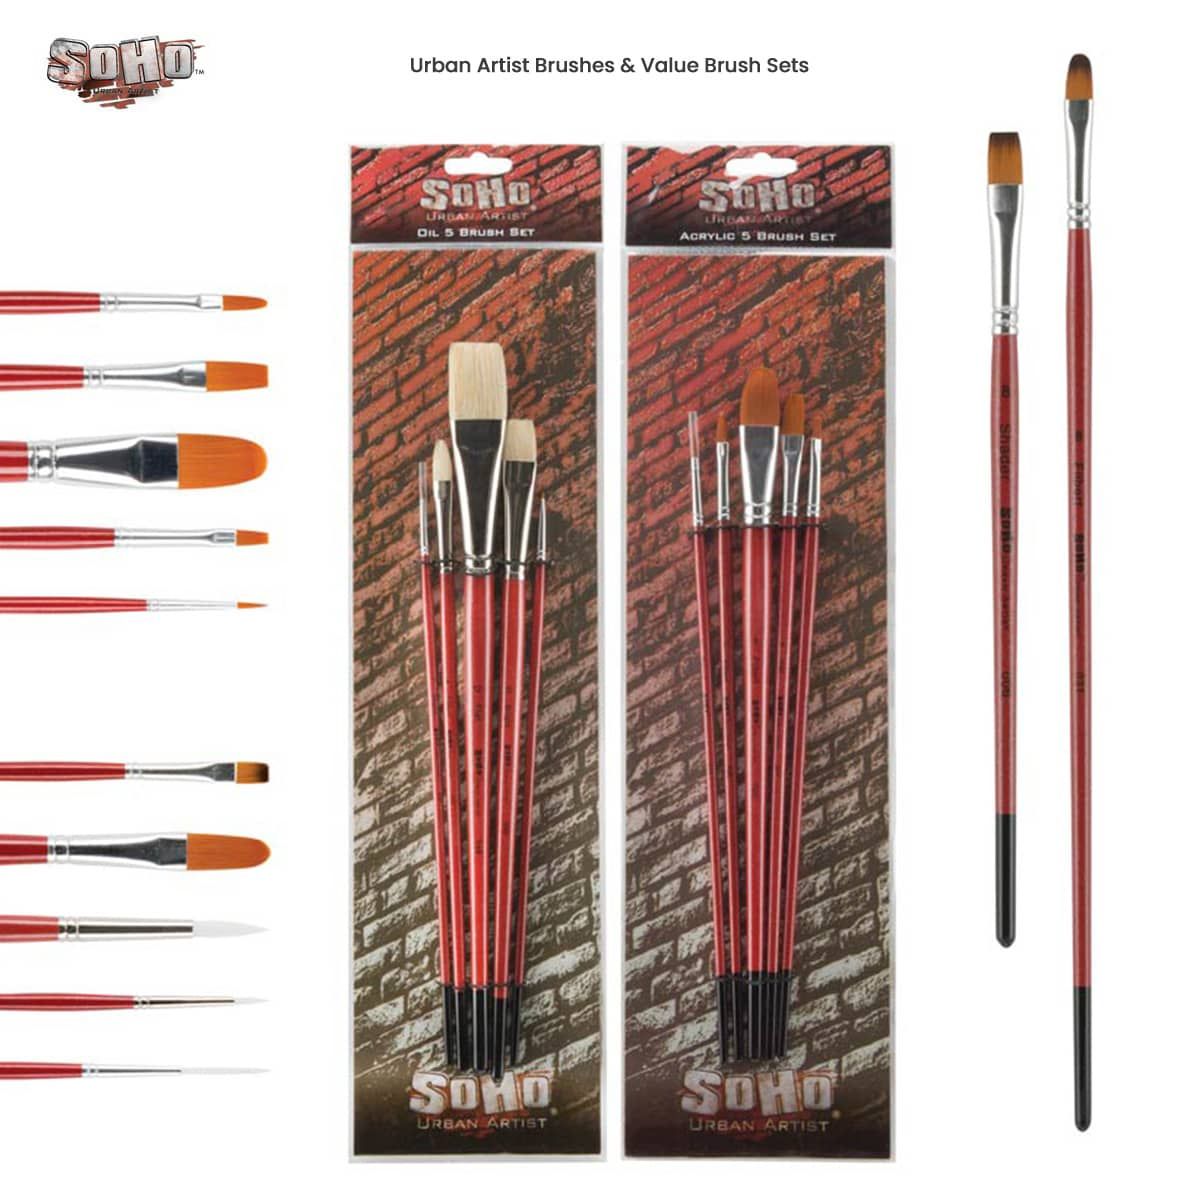 SoHo Urban Artist Value Brushes & Sets